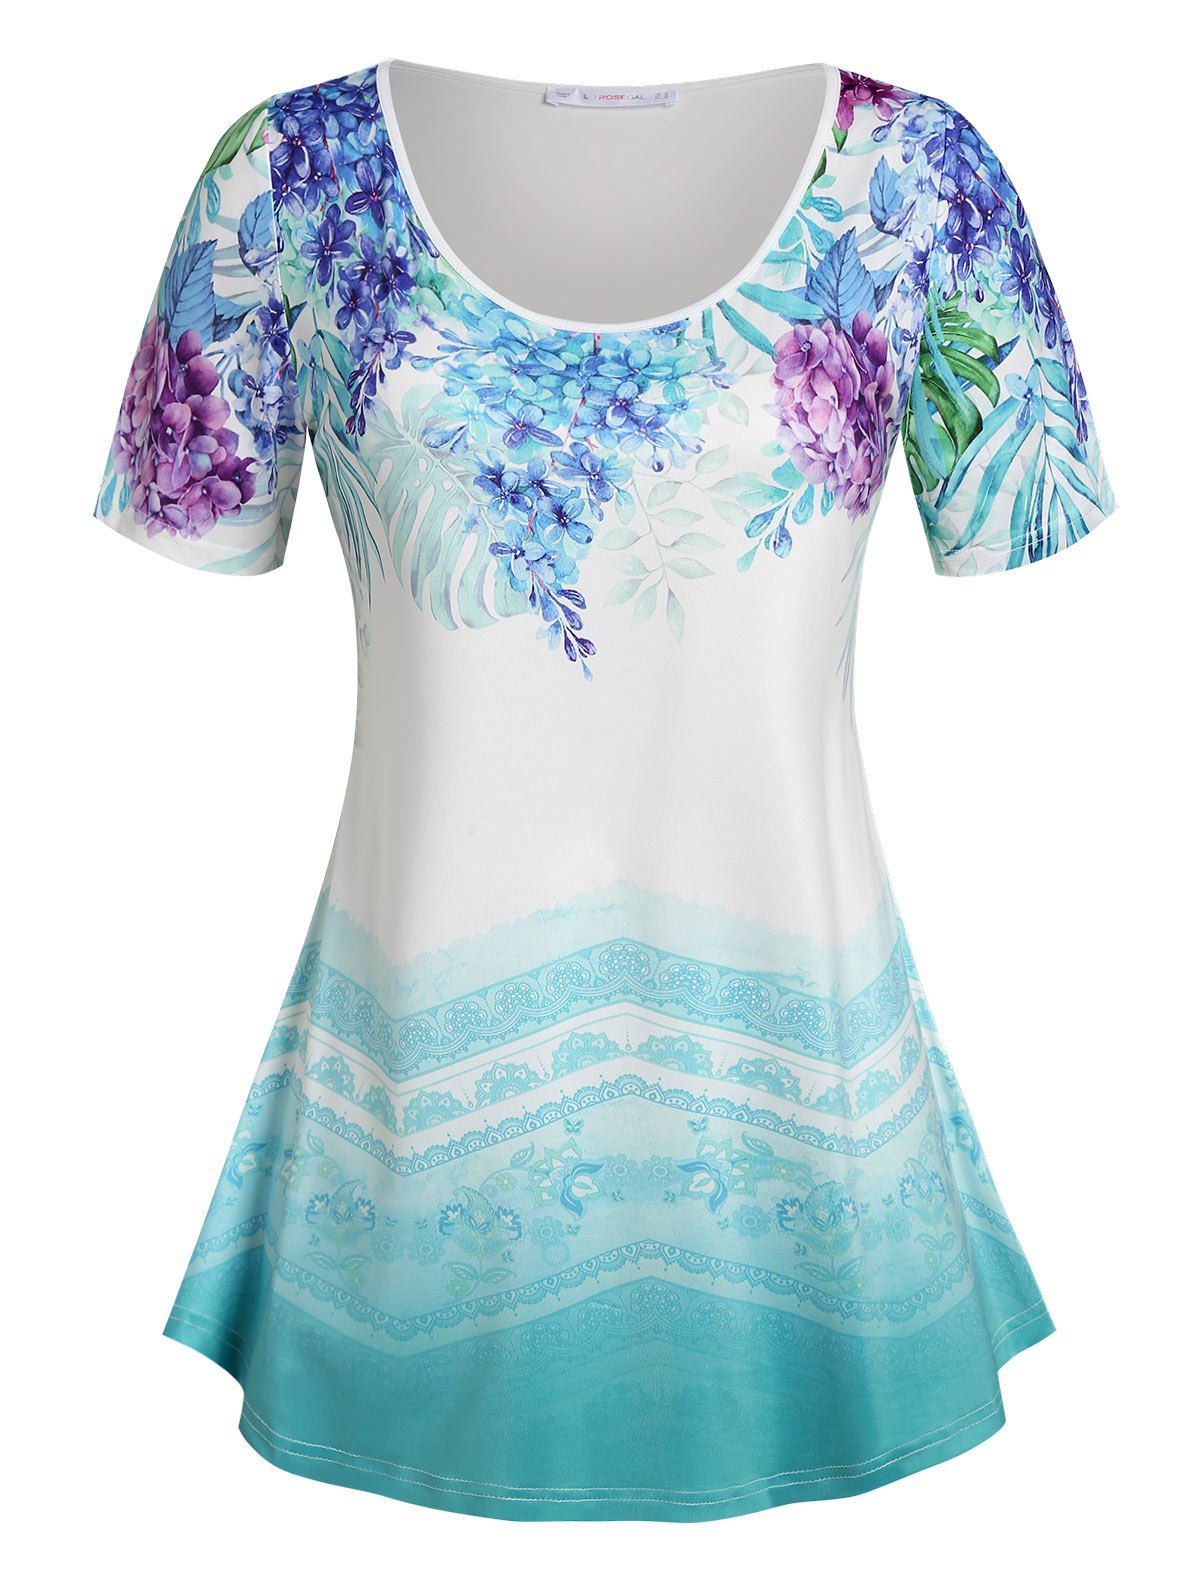 T-shirt Ombre à Imprimé Floral Grande Taille - Bleu clair 2X